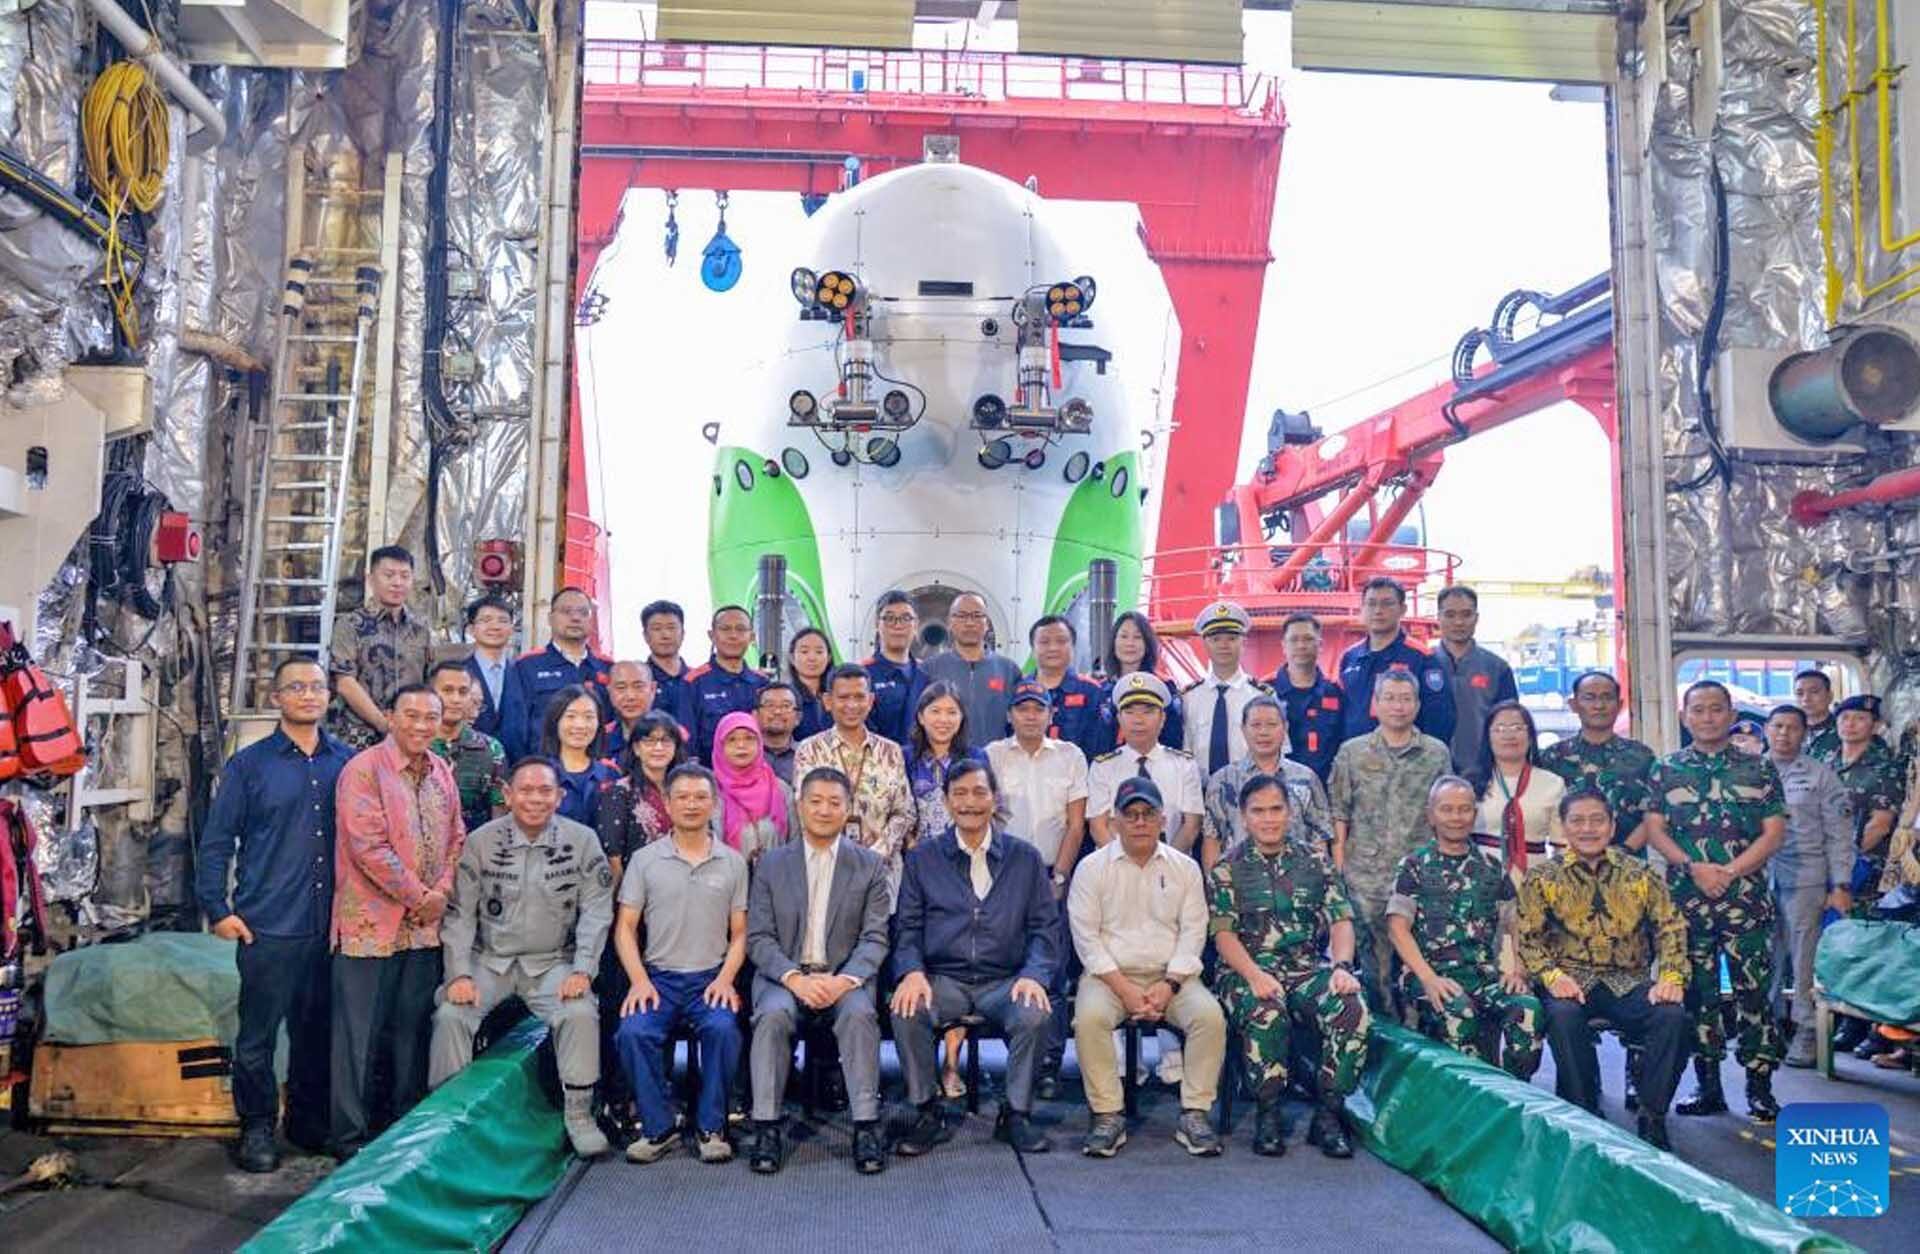 อินโดนีเซีย “สร้างสถิติดำทะเลลึกสุด” 7,178 เมตร-ด้วยยานเฟิ่นโต้วเจ่อของจีน